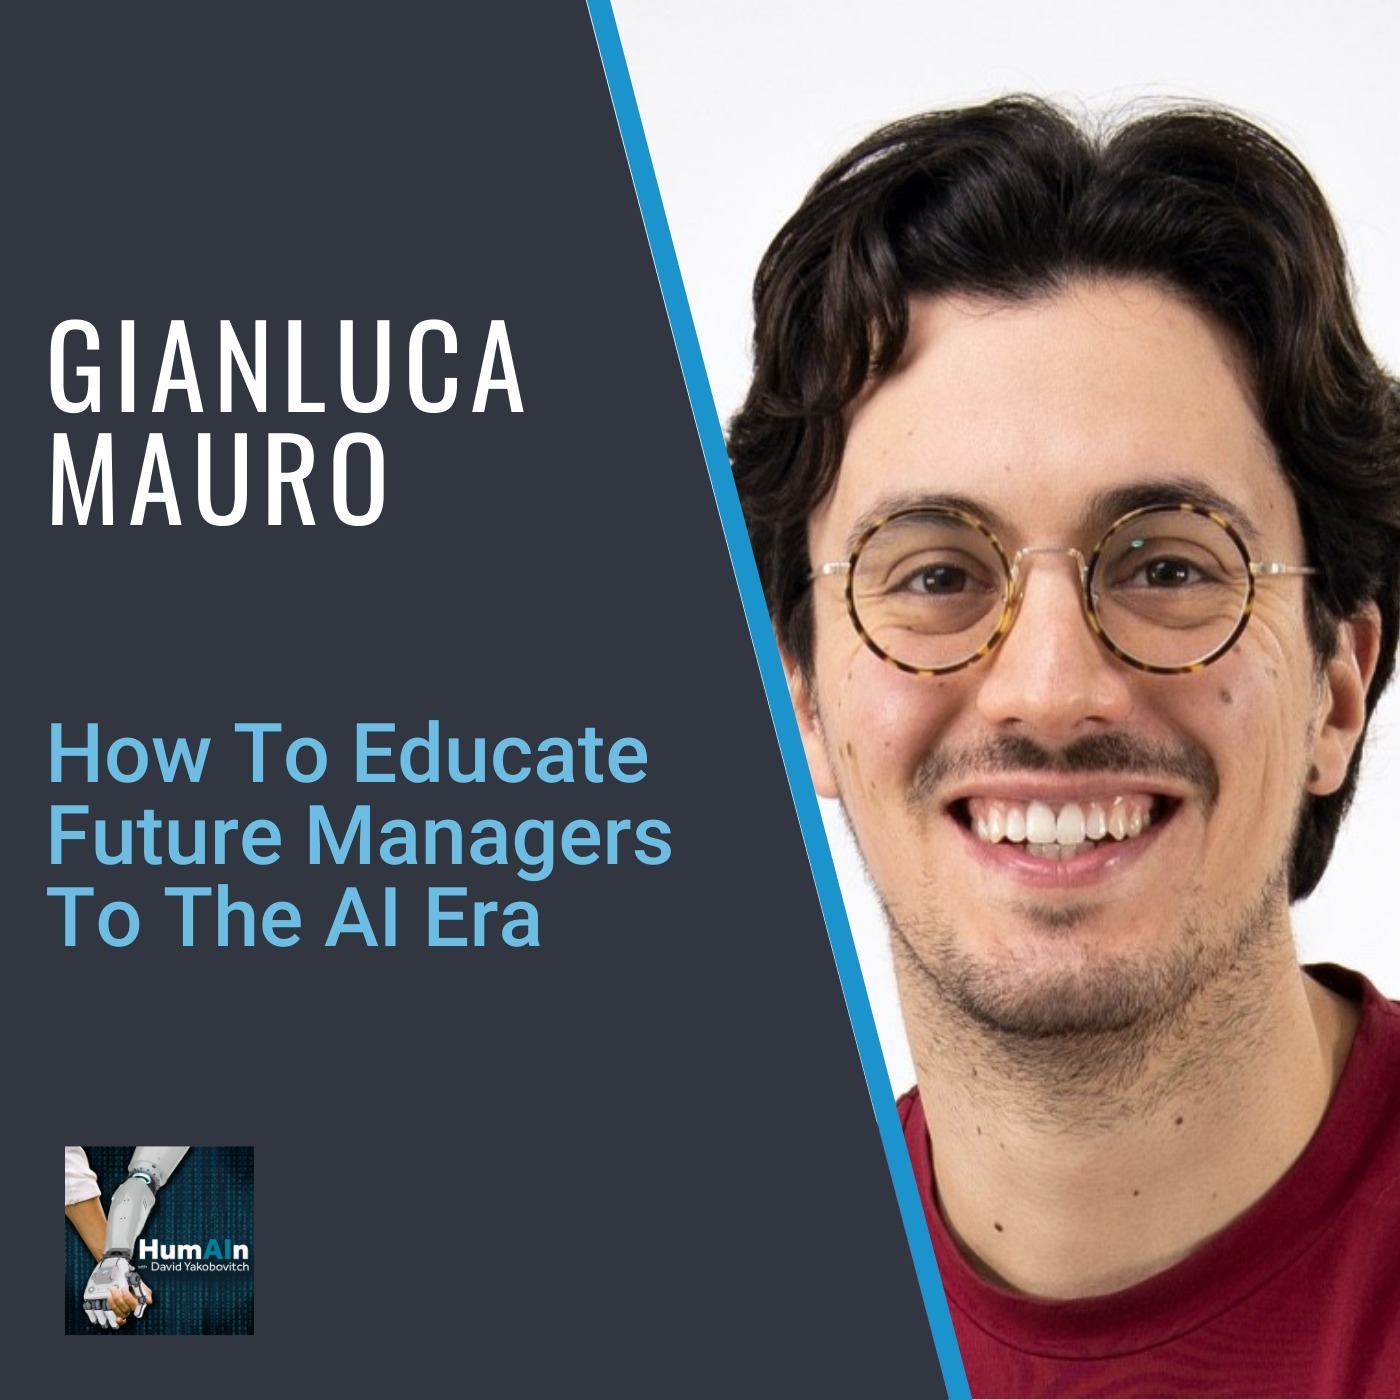 Gianluca Mauro: How To Educate Future Managers To The AI Era